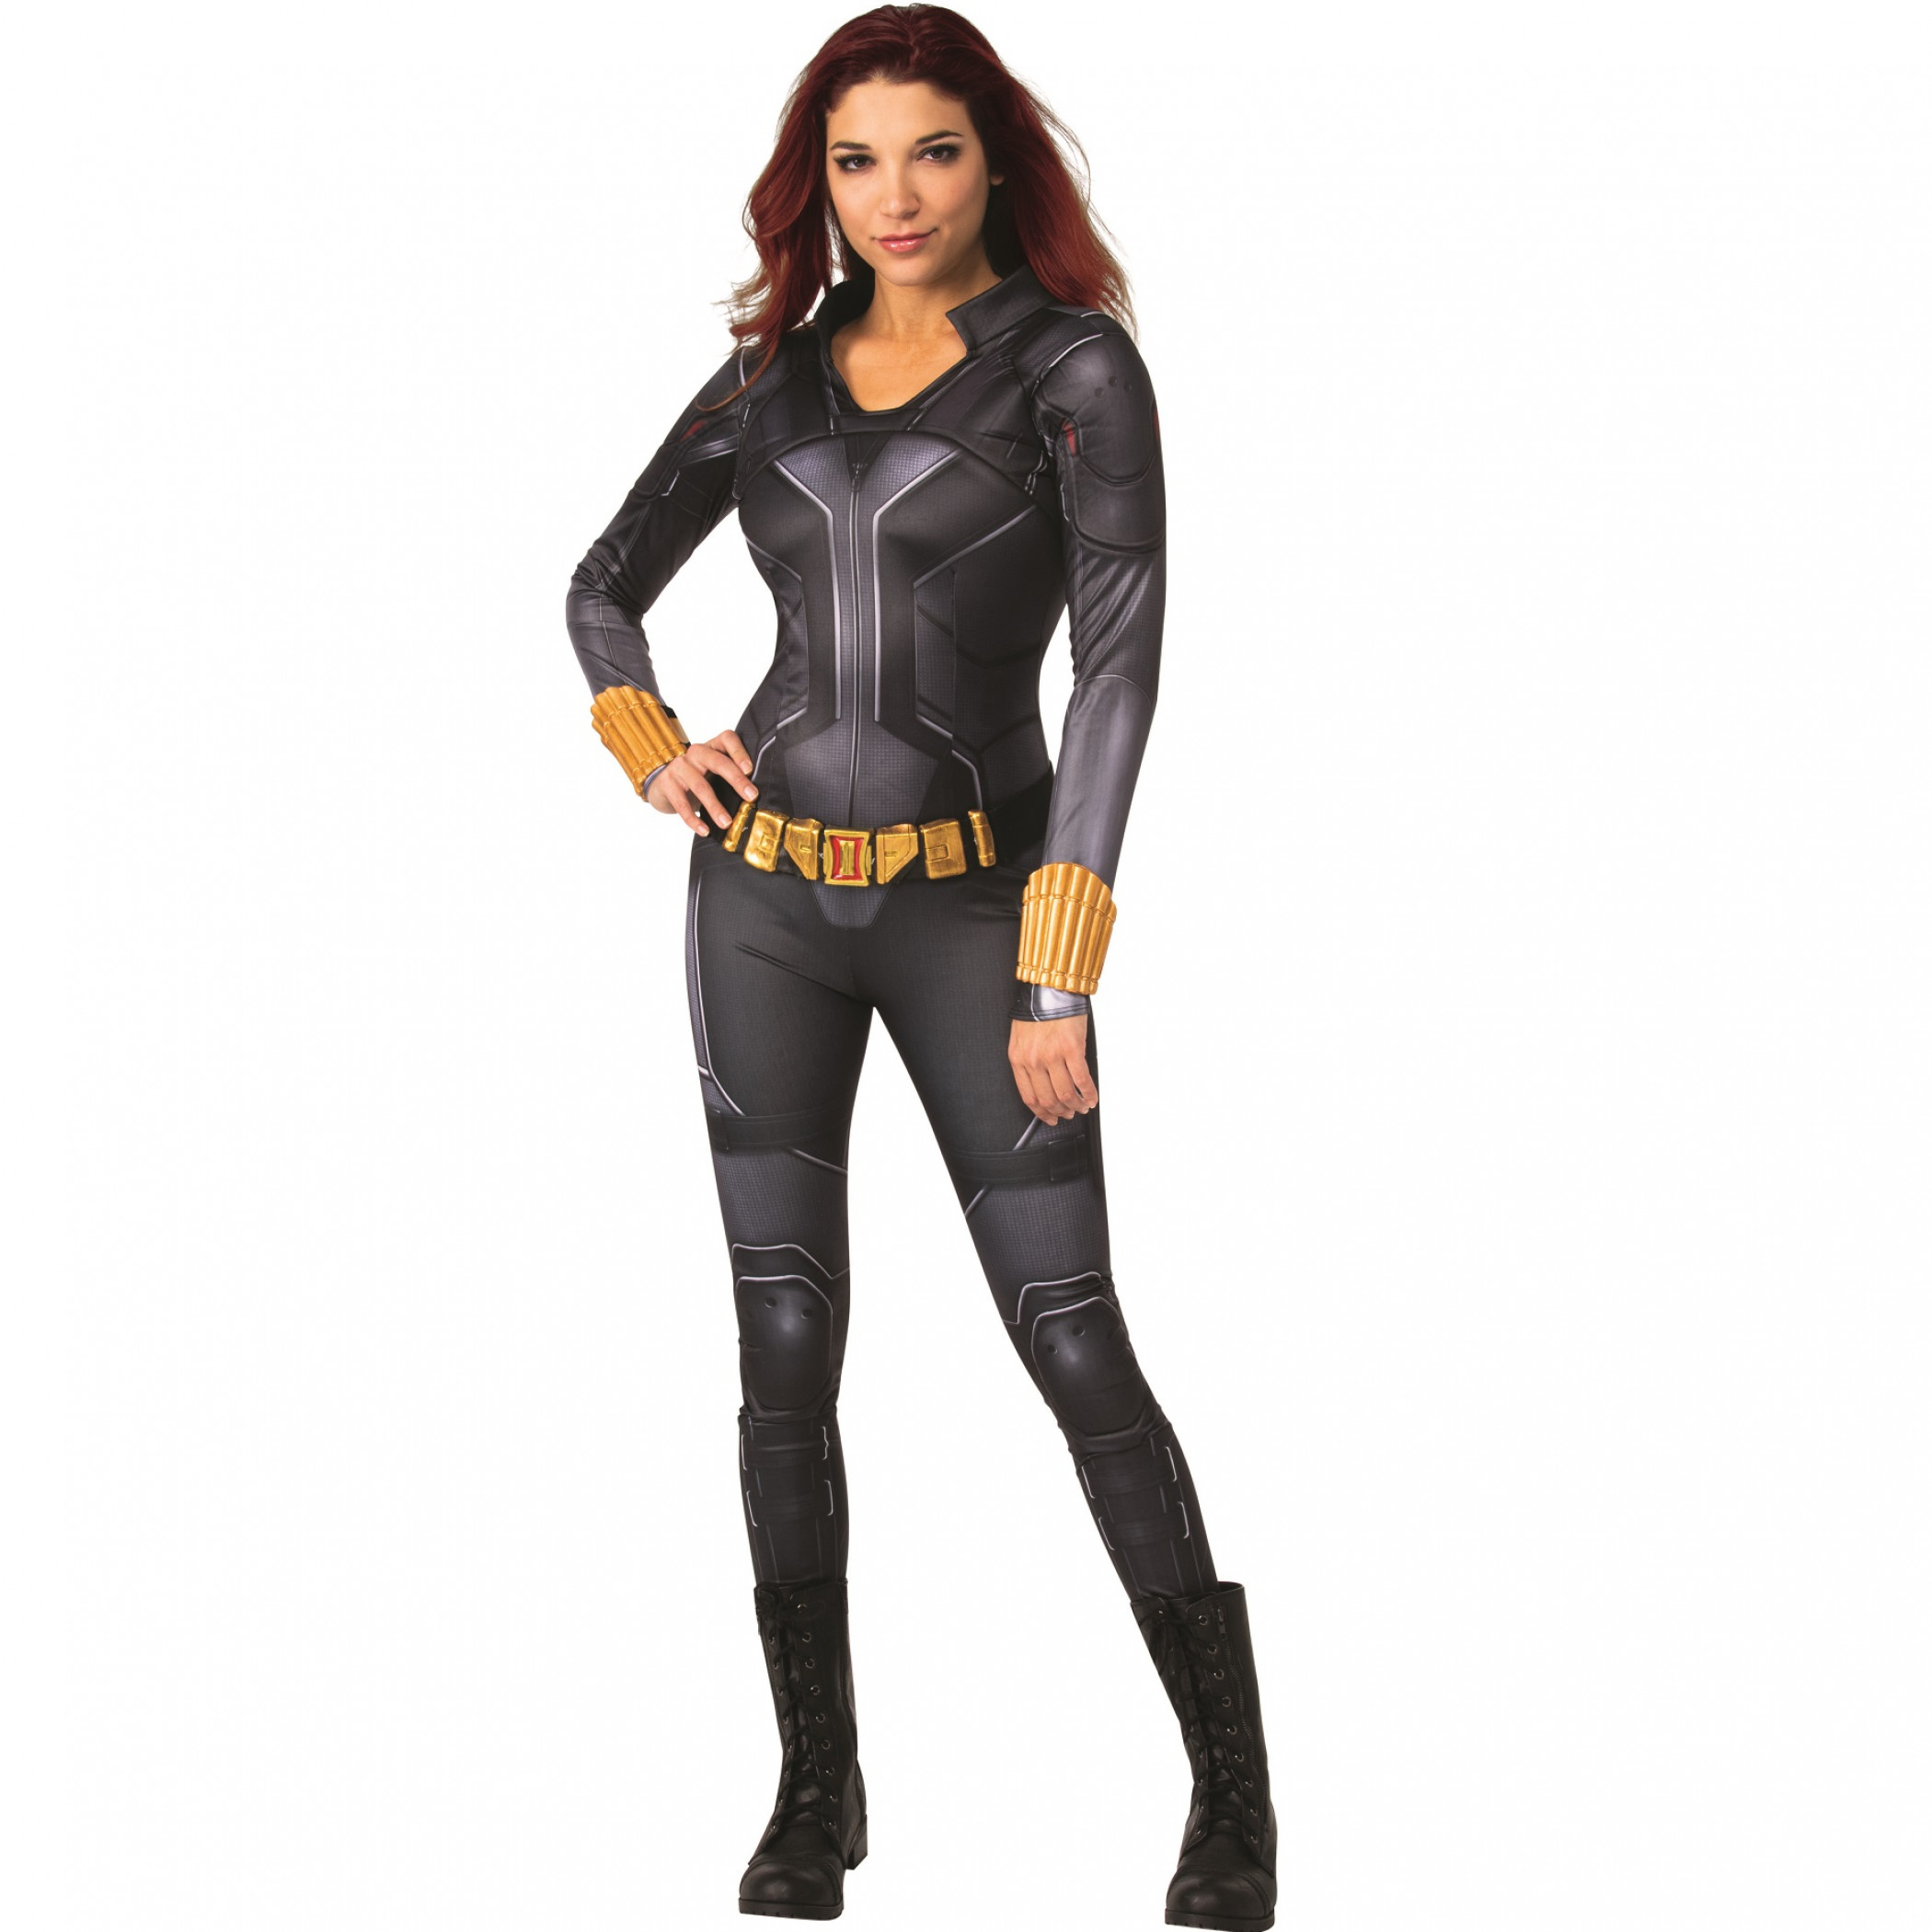 Marvel Studios Avengers Black Widow Deluxe Women's Costume